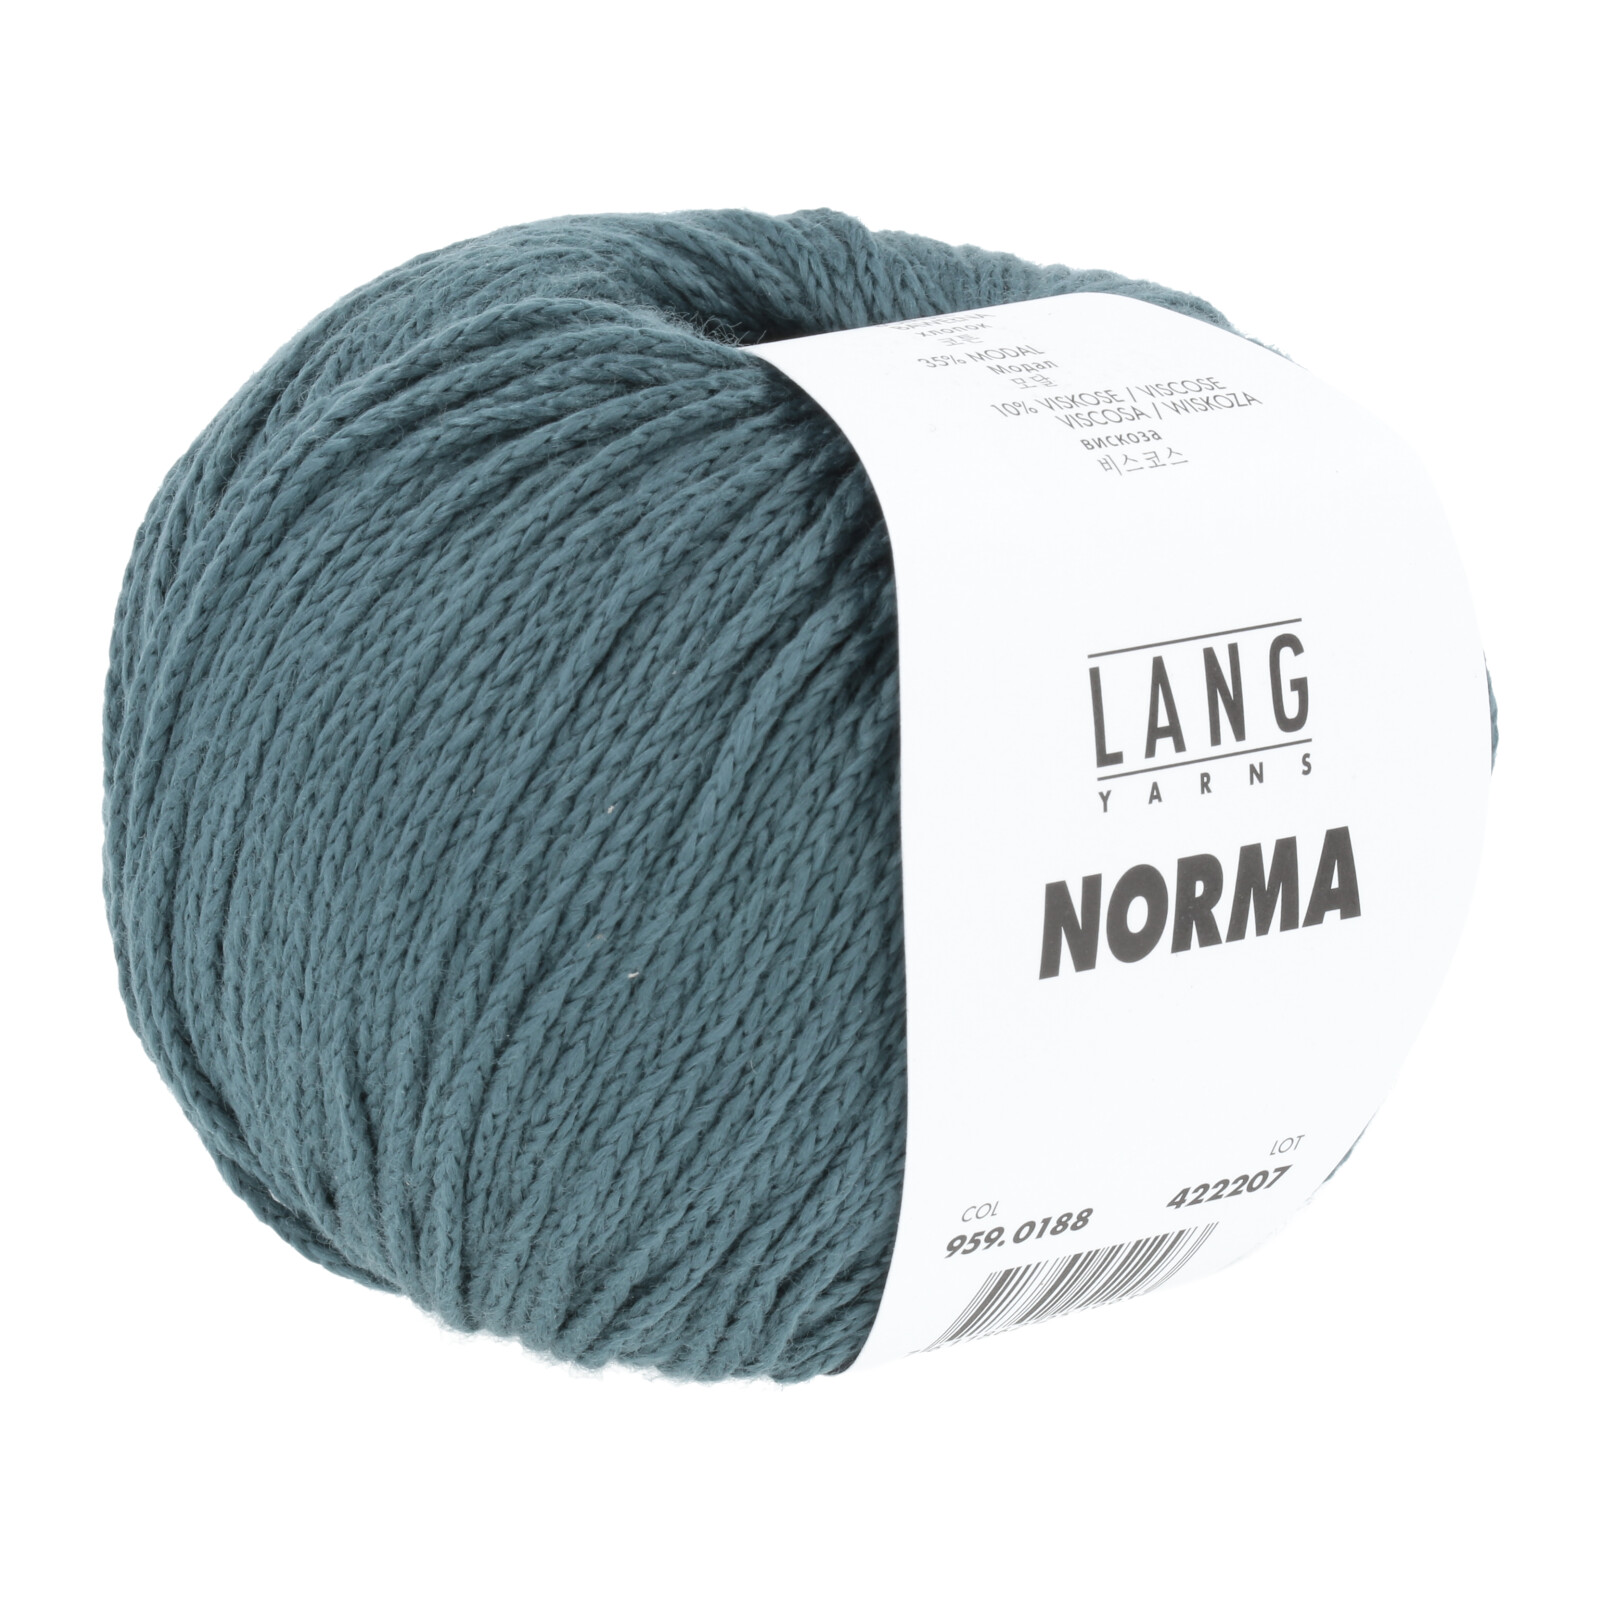 coton norma lang yarns coloris 188